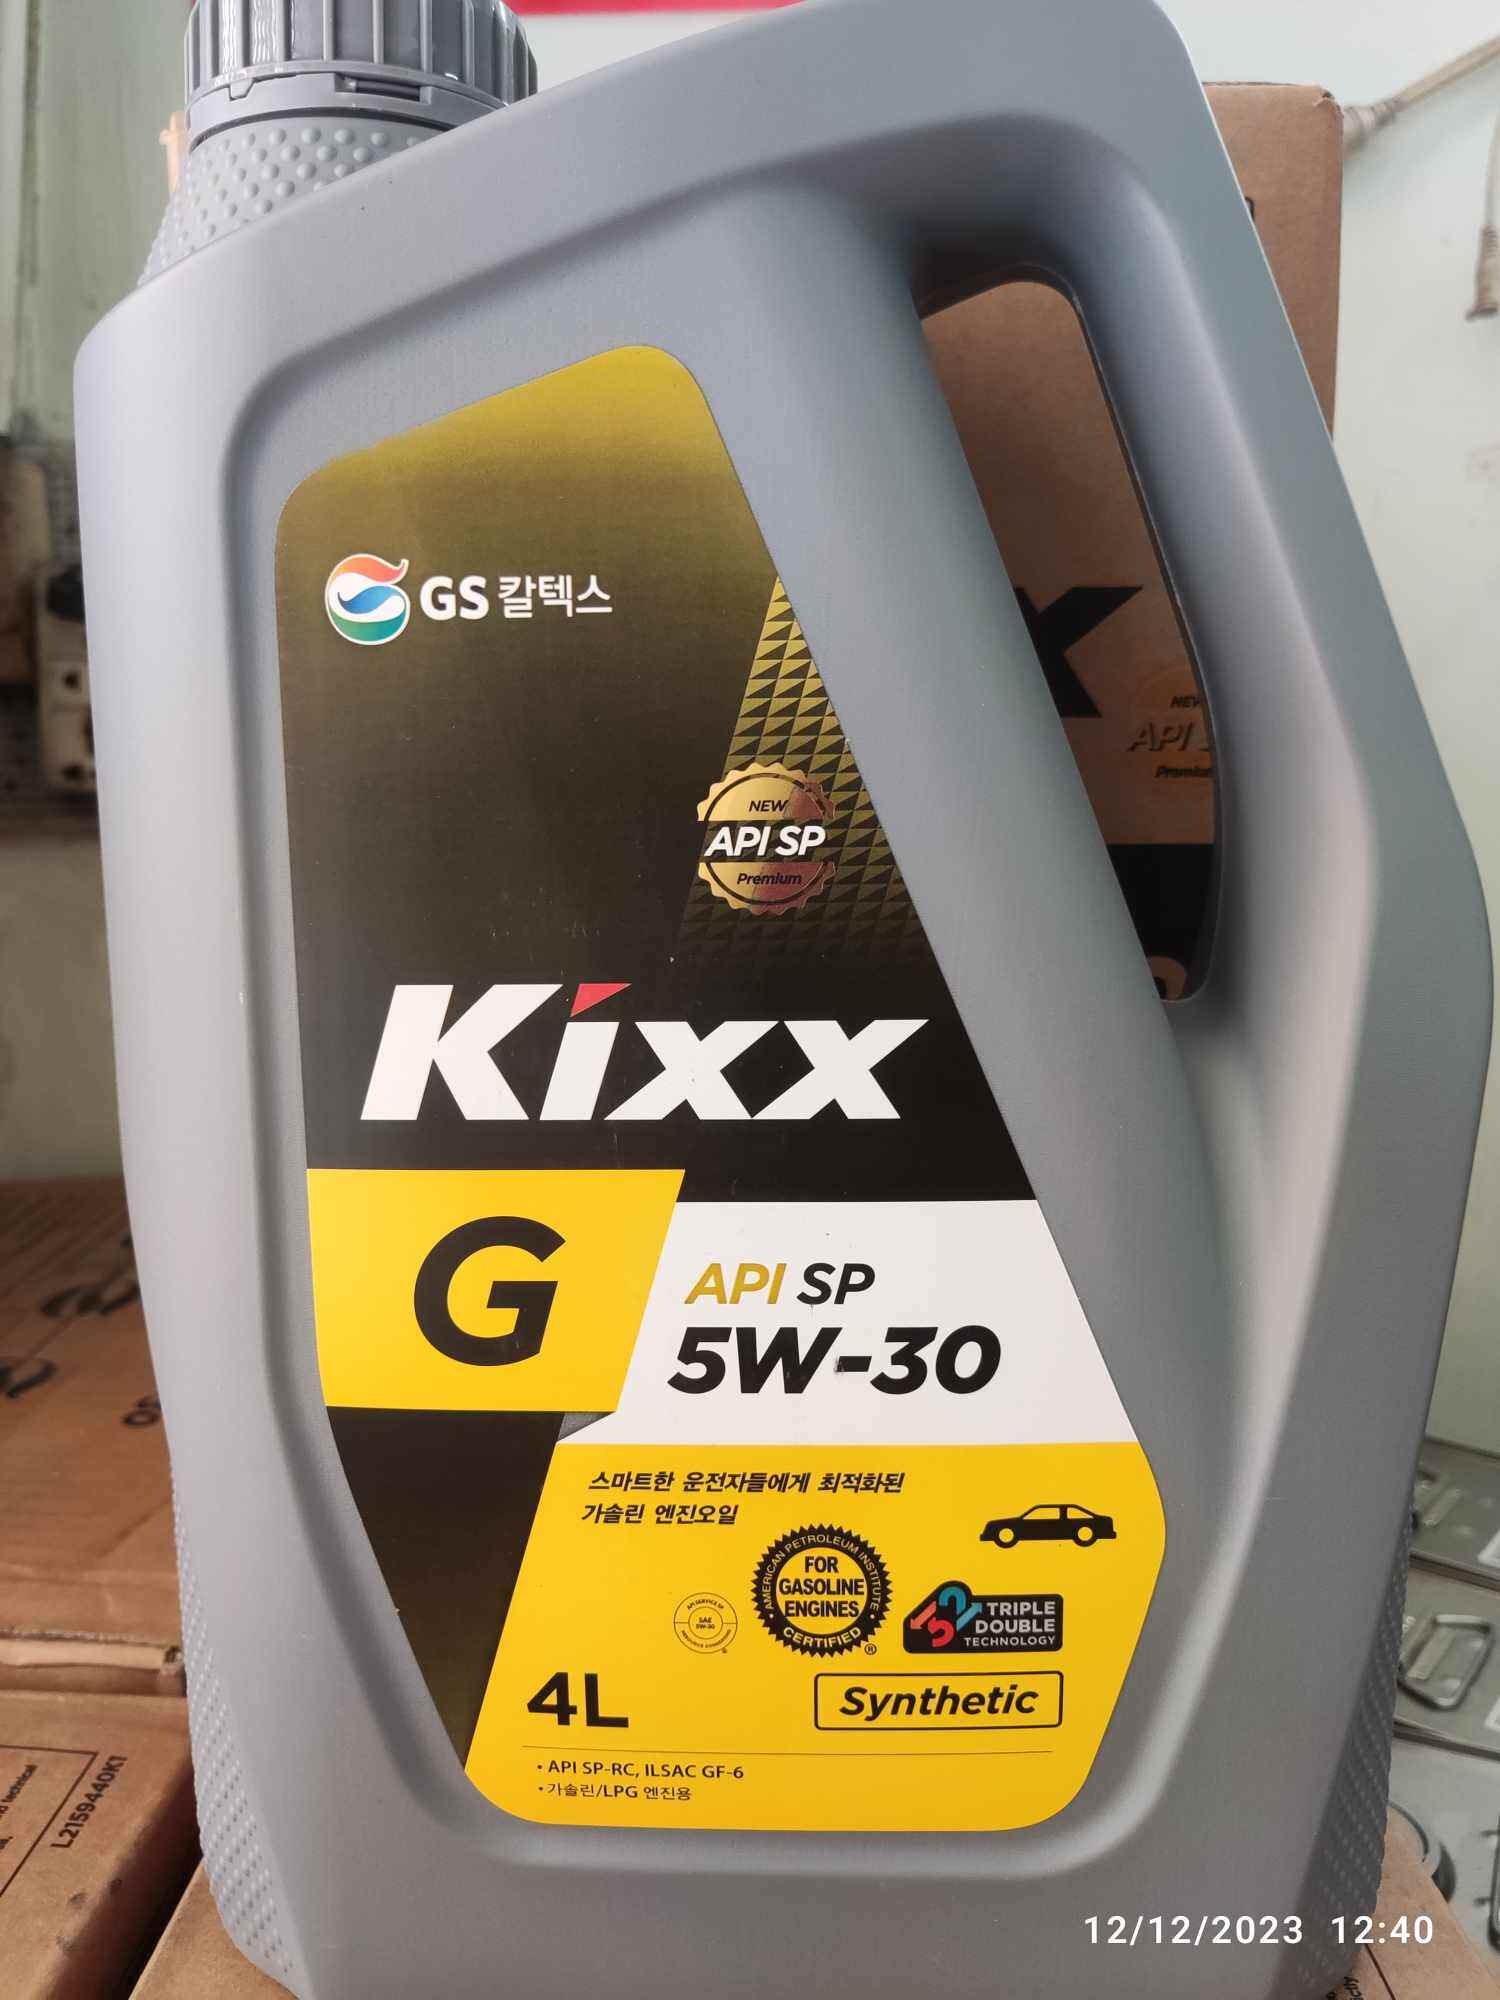 Dầu nhớt KIXX G API SP 5w30 4L - nội địa Hàn Quốc